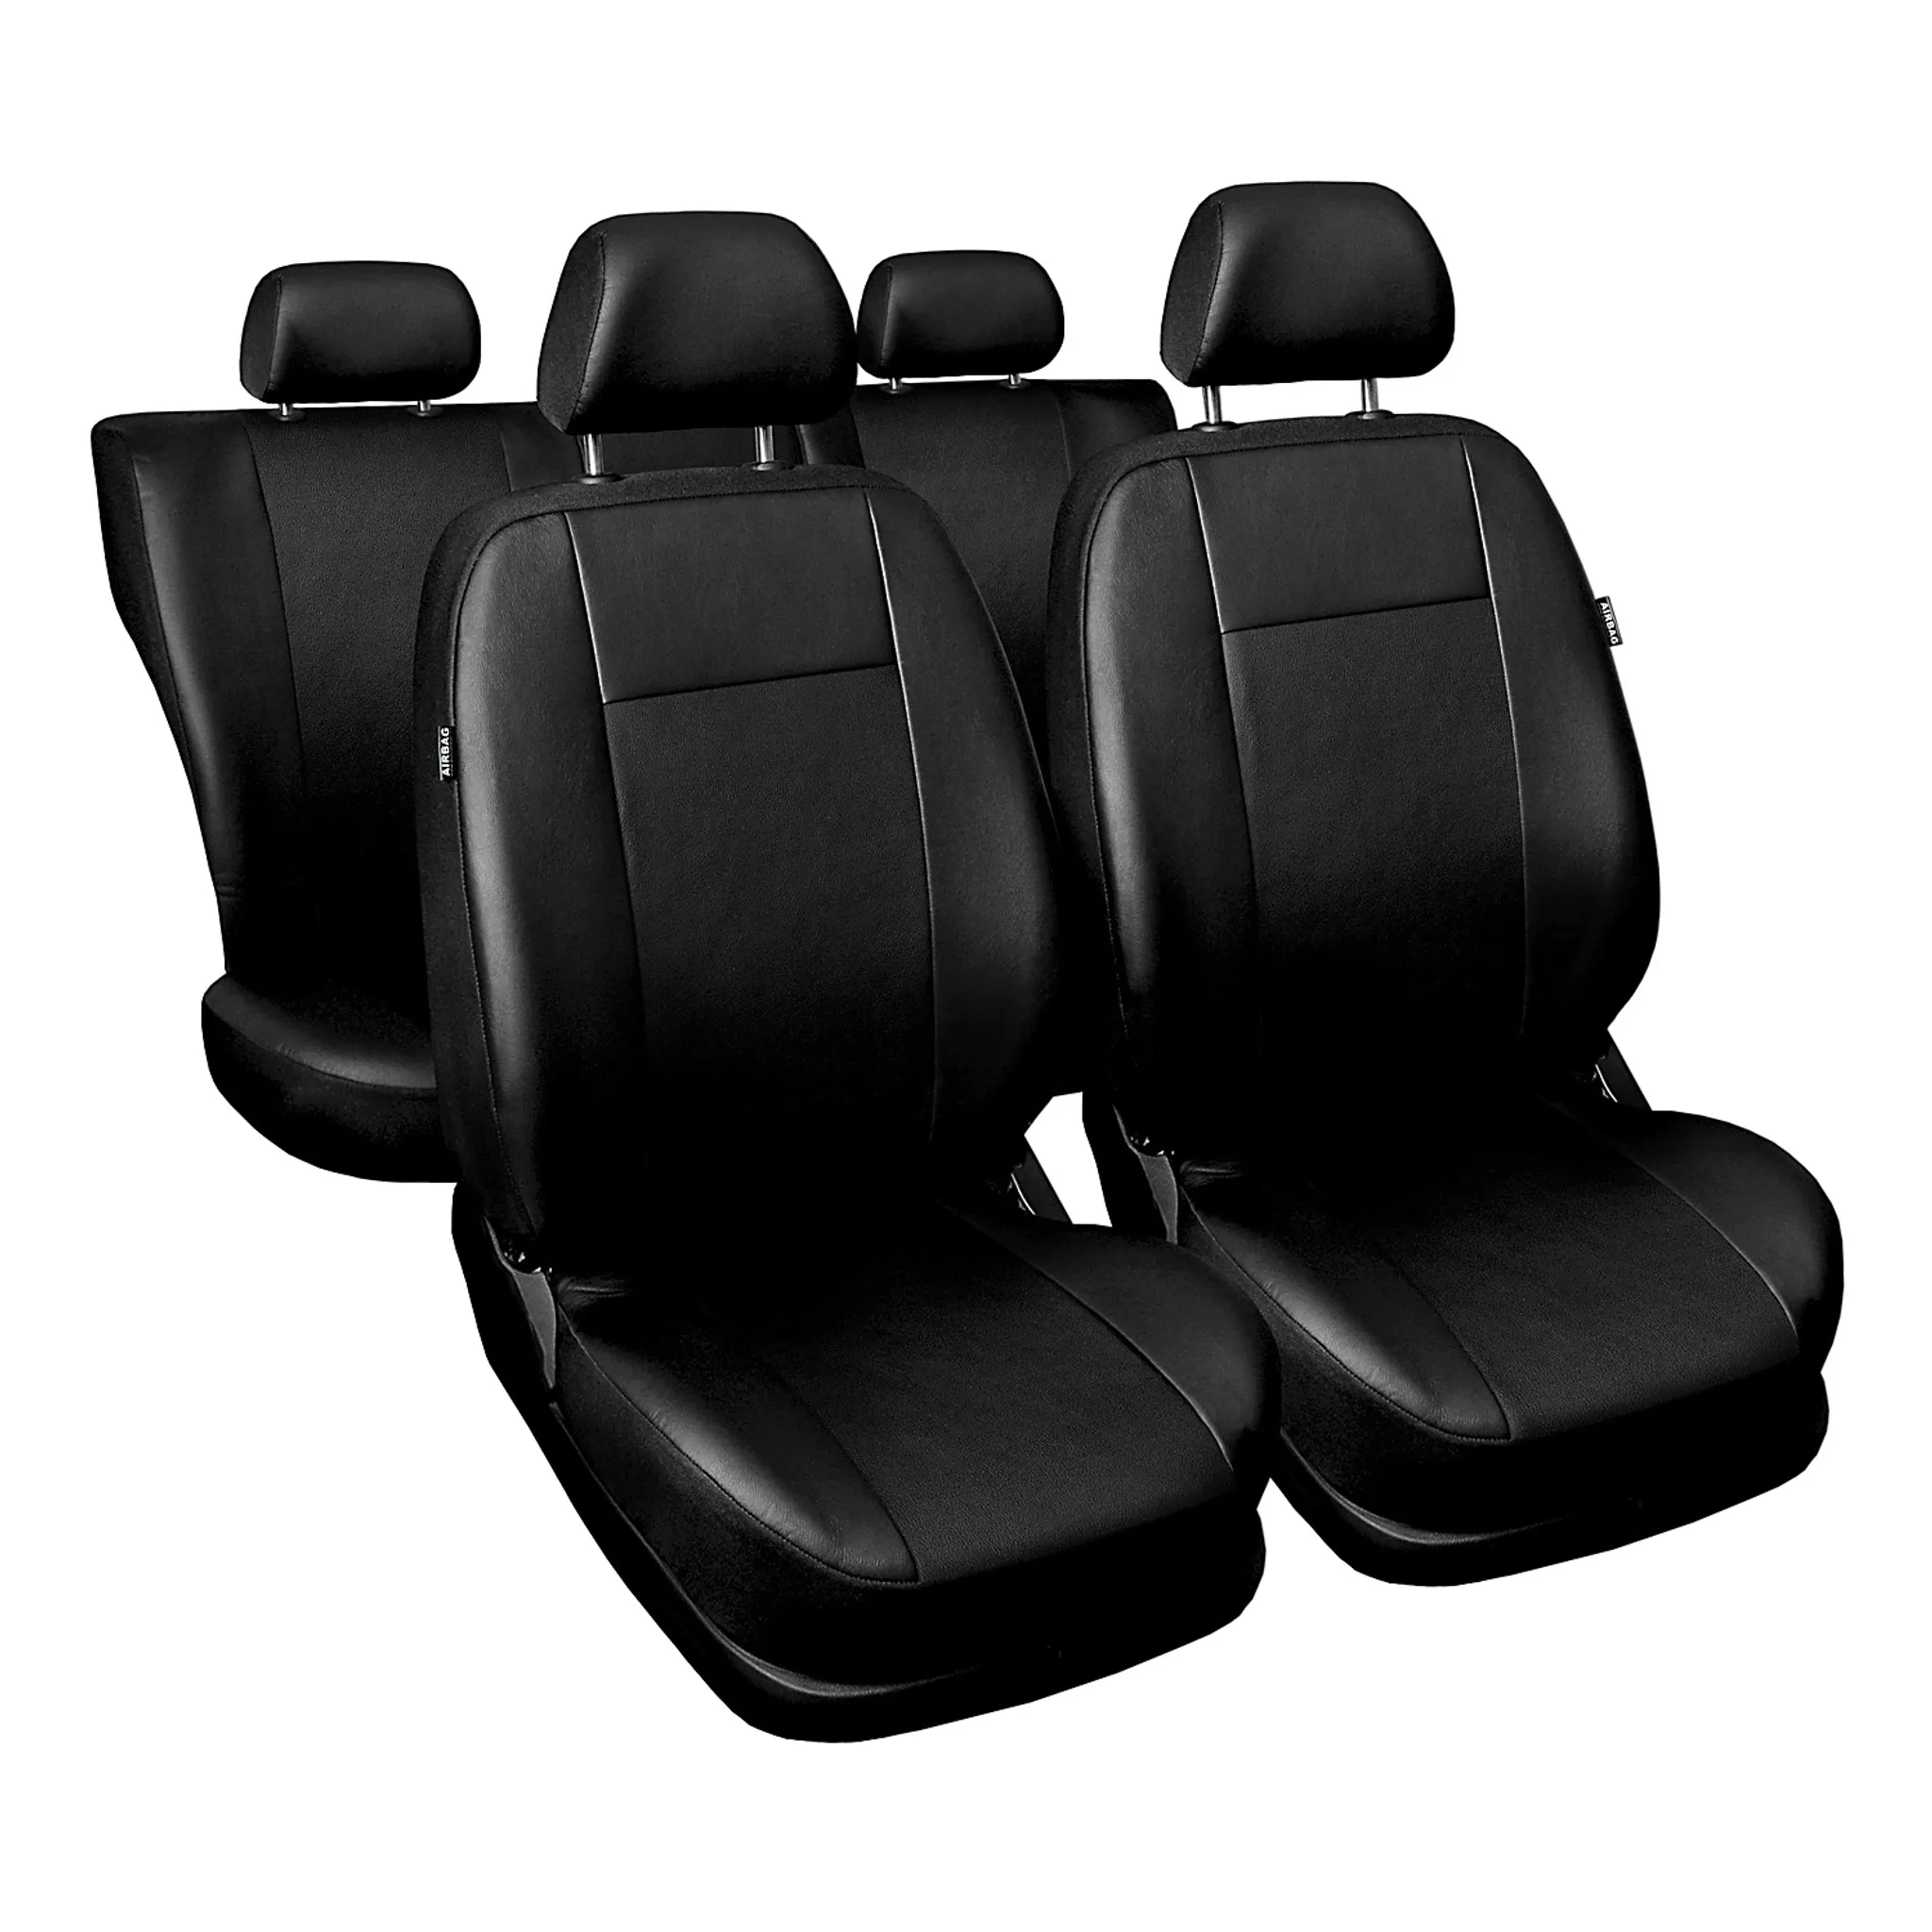 Zakschneider Schwarze Sitzbezüge für AUDI A3